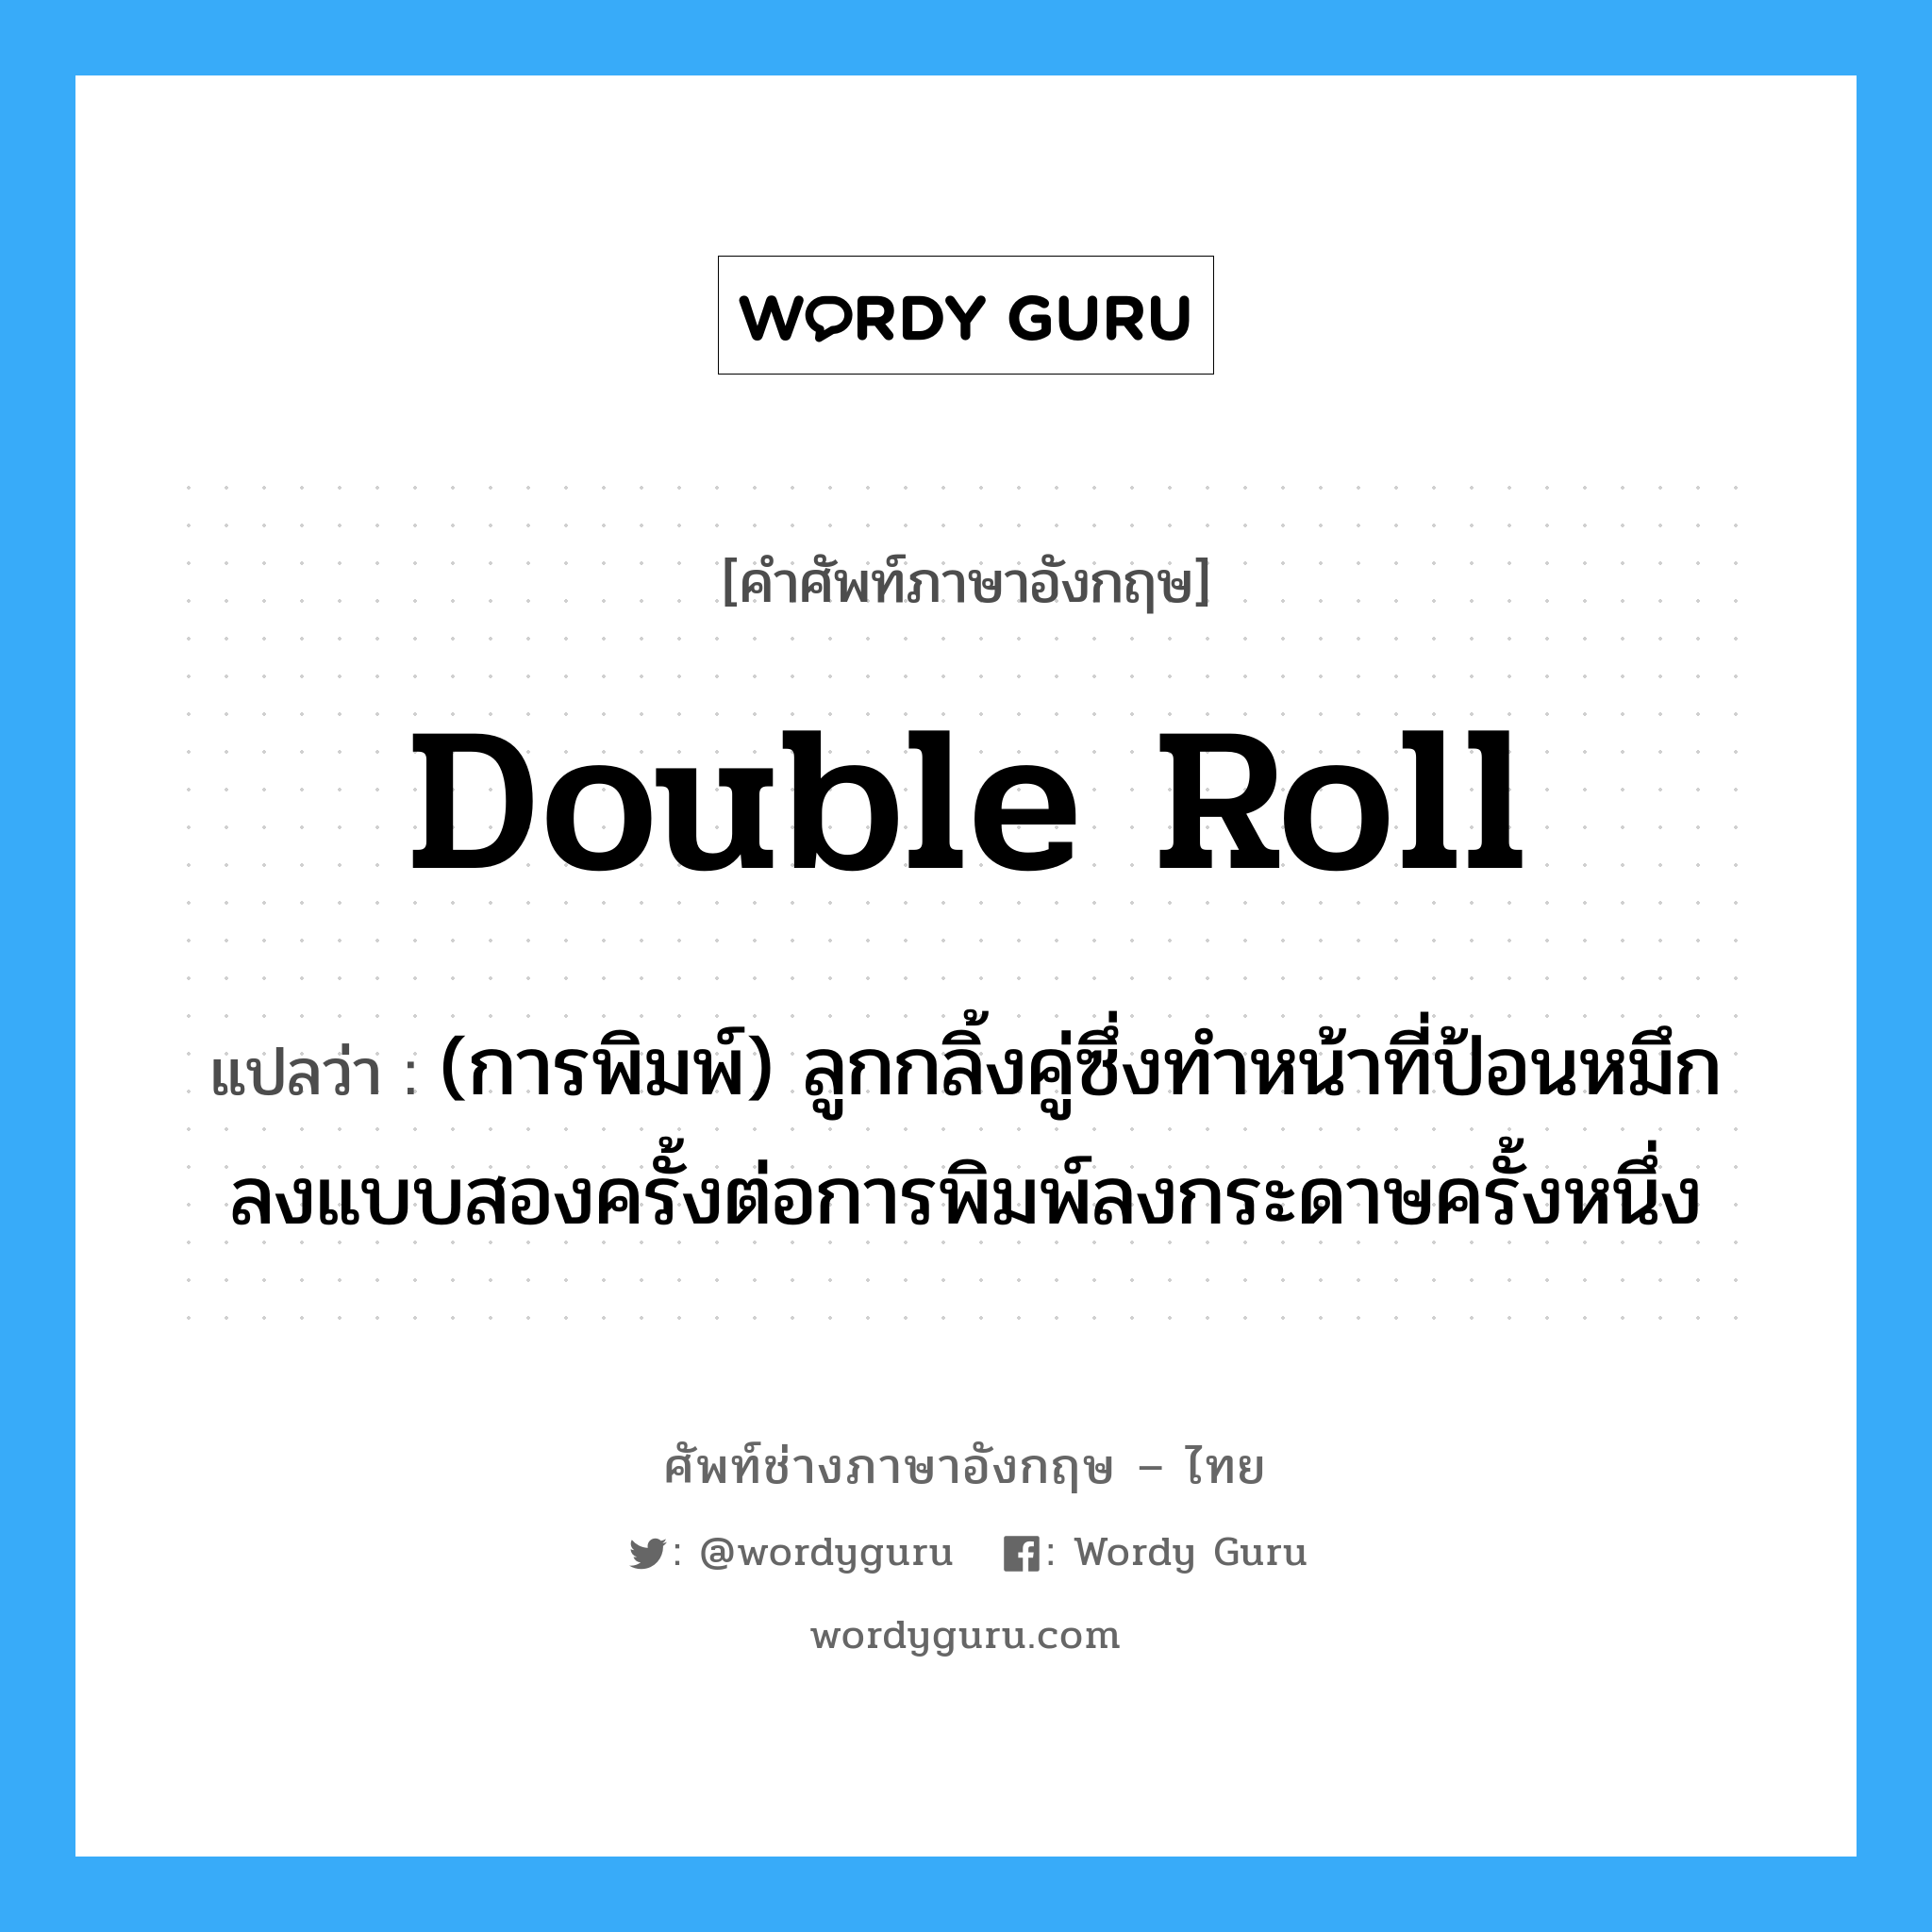 double roll แปลว่า?, คำศัพท์ช่างภาษาอังกฤษ - ไทย double roll คำศัพท์ภาษาอังกฤษ double roll แปลว่า (การพิมพ์) ลูกกลิ้งคู่ซึ่งทำหน้าที่ป้อนหมึกลงแบบสองครั้งต่อการพิมพ์ลงกระดาษครั้งหนึ่ง